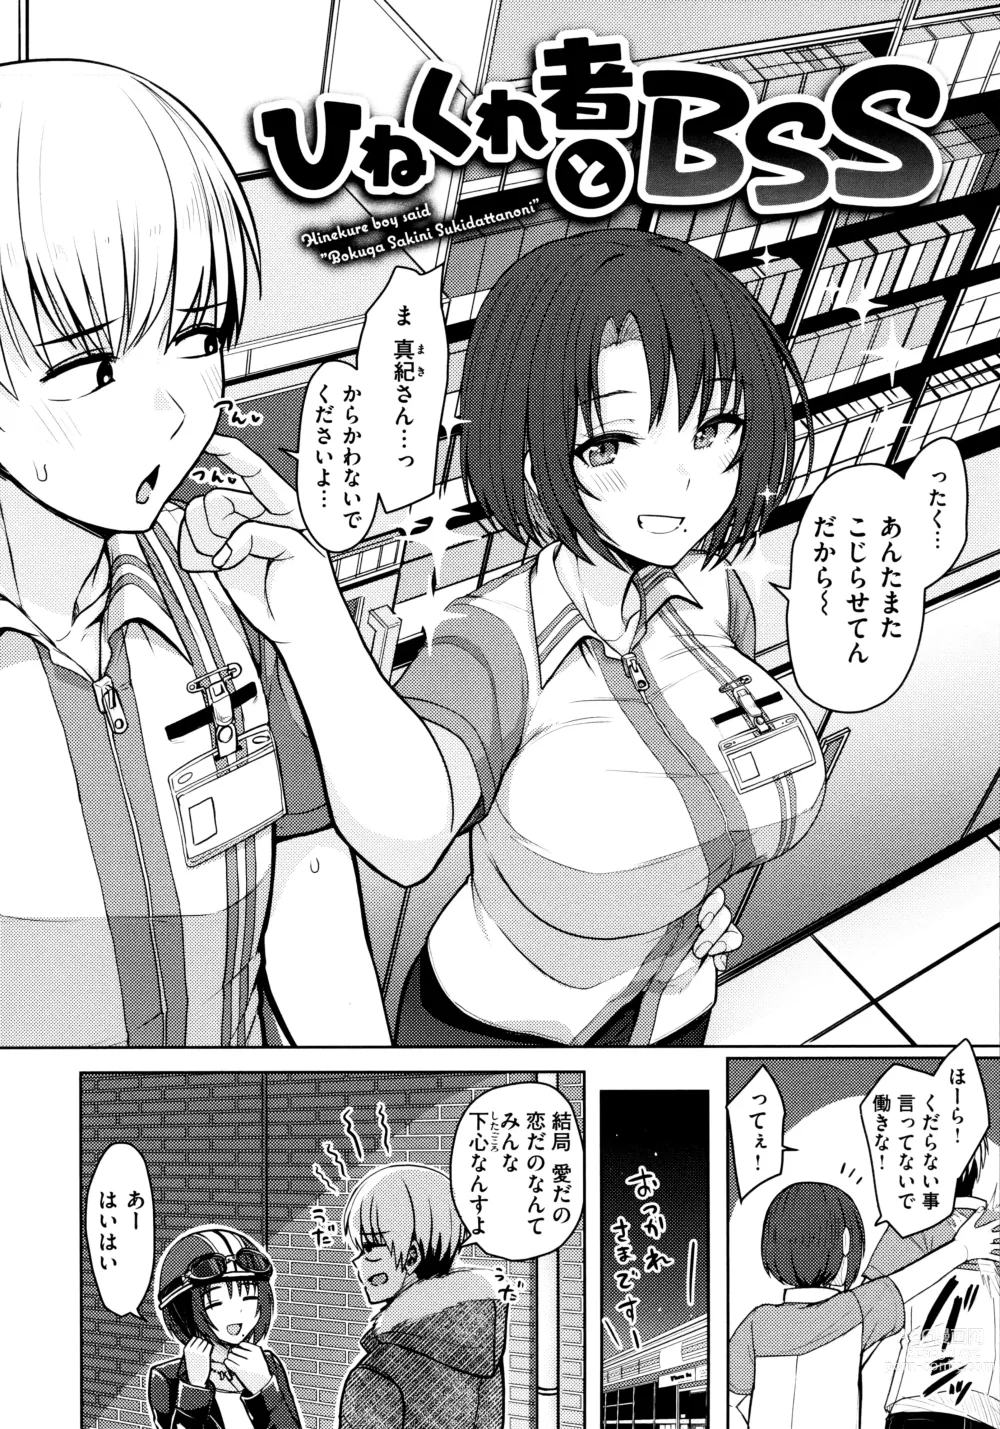 Page 22 of manga Nukunuku Seikatsu - Life Full of Sex + Melonbooks Kounyu Tokuten + Toranoana Kounyu Tokuten